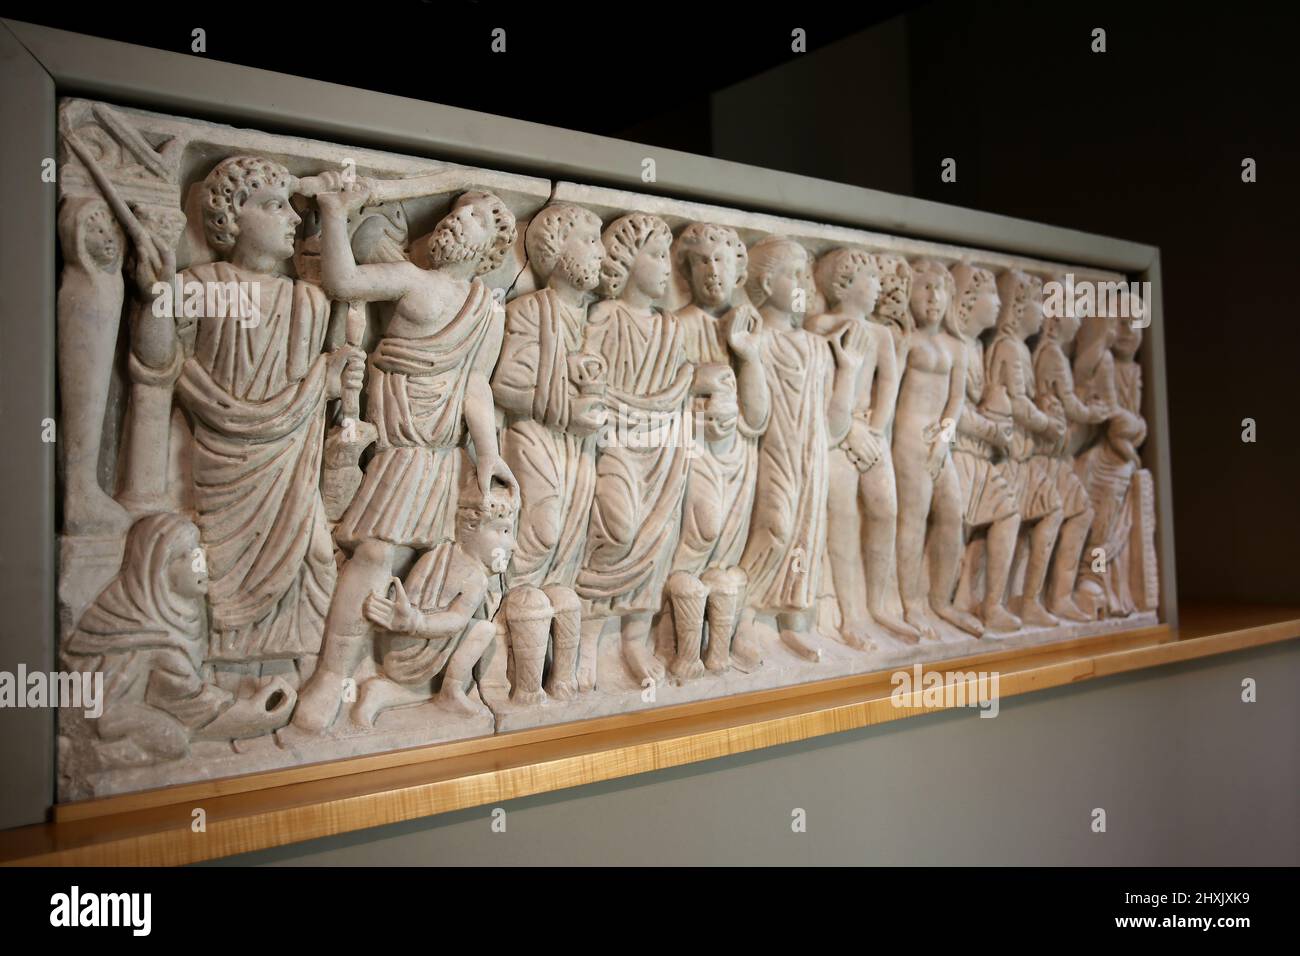 Frontplatte der Sarkophag mit biblischen Szenen. In einer römischen Werkstatt, 4. c. AD. Frederic Mares Museum. Barcelona, Spanien. Stockfoto